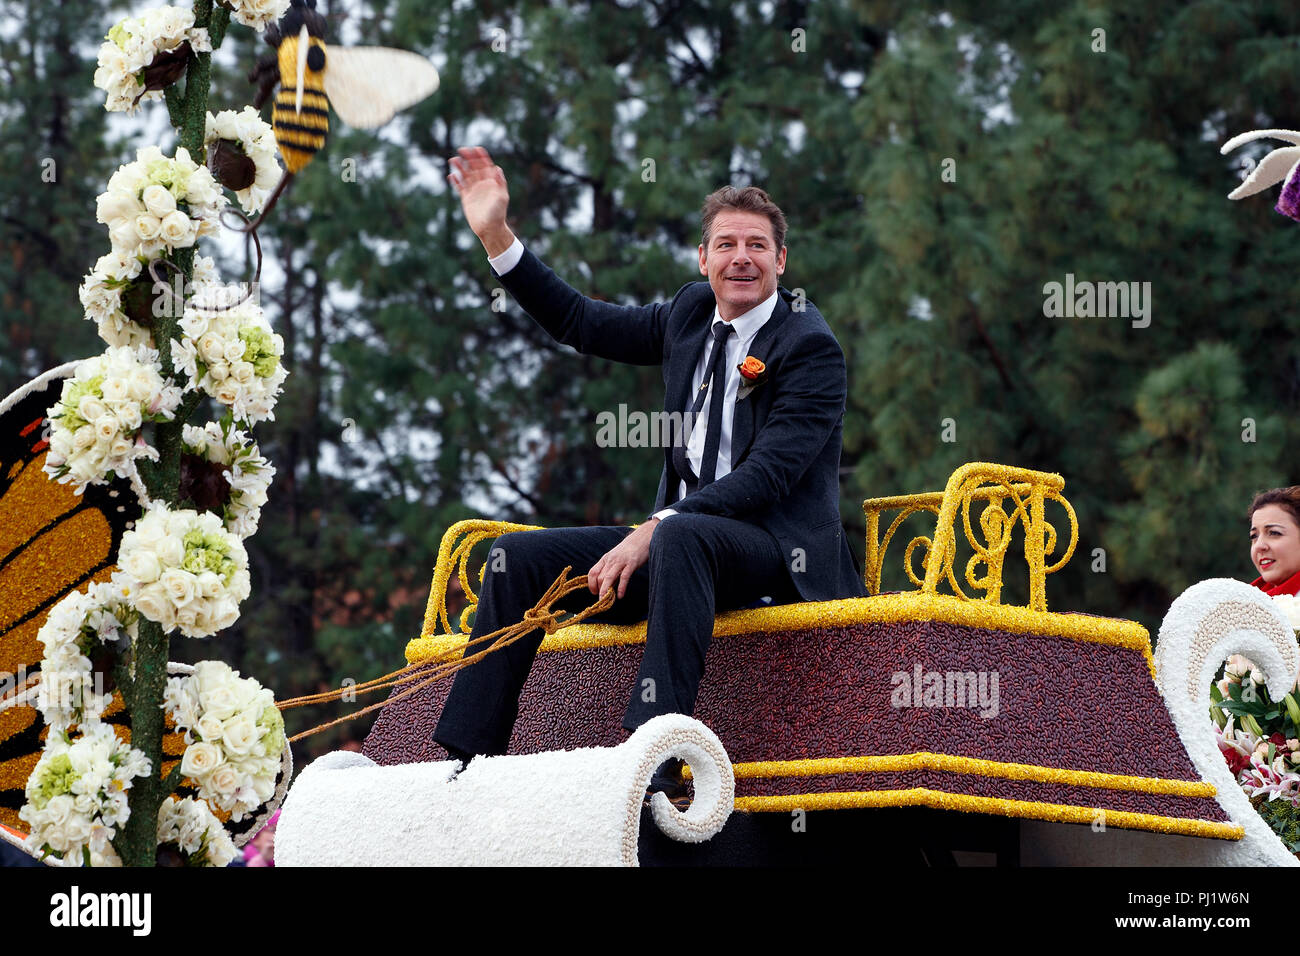 La televisione attore Ty Pennington, 2017 Torneo di Rose Parade, Rose Parade di Pasadena, California, Stati Uniti d'America Foto Stock